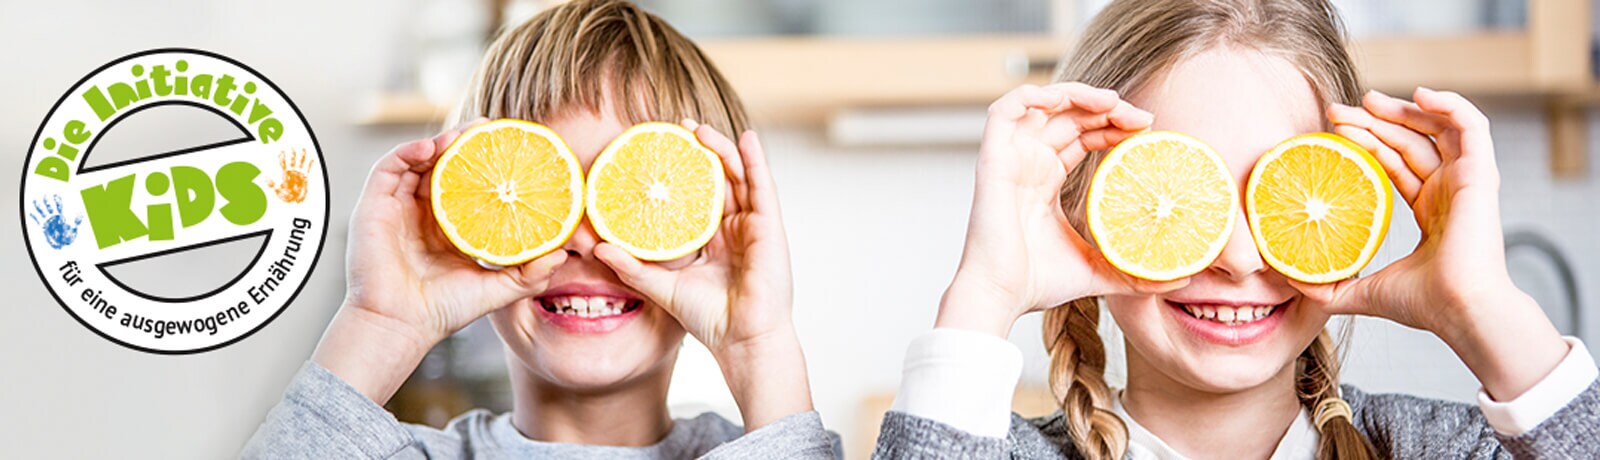 Initiative Kids - Zwei Kinder mit Orangenscheiben vor den Augen